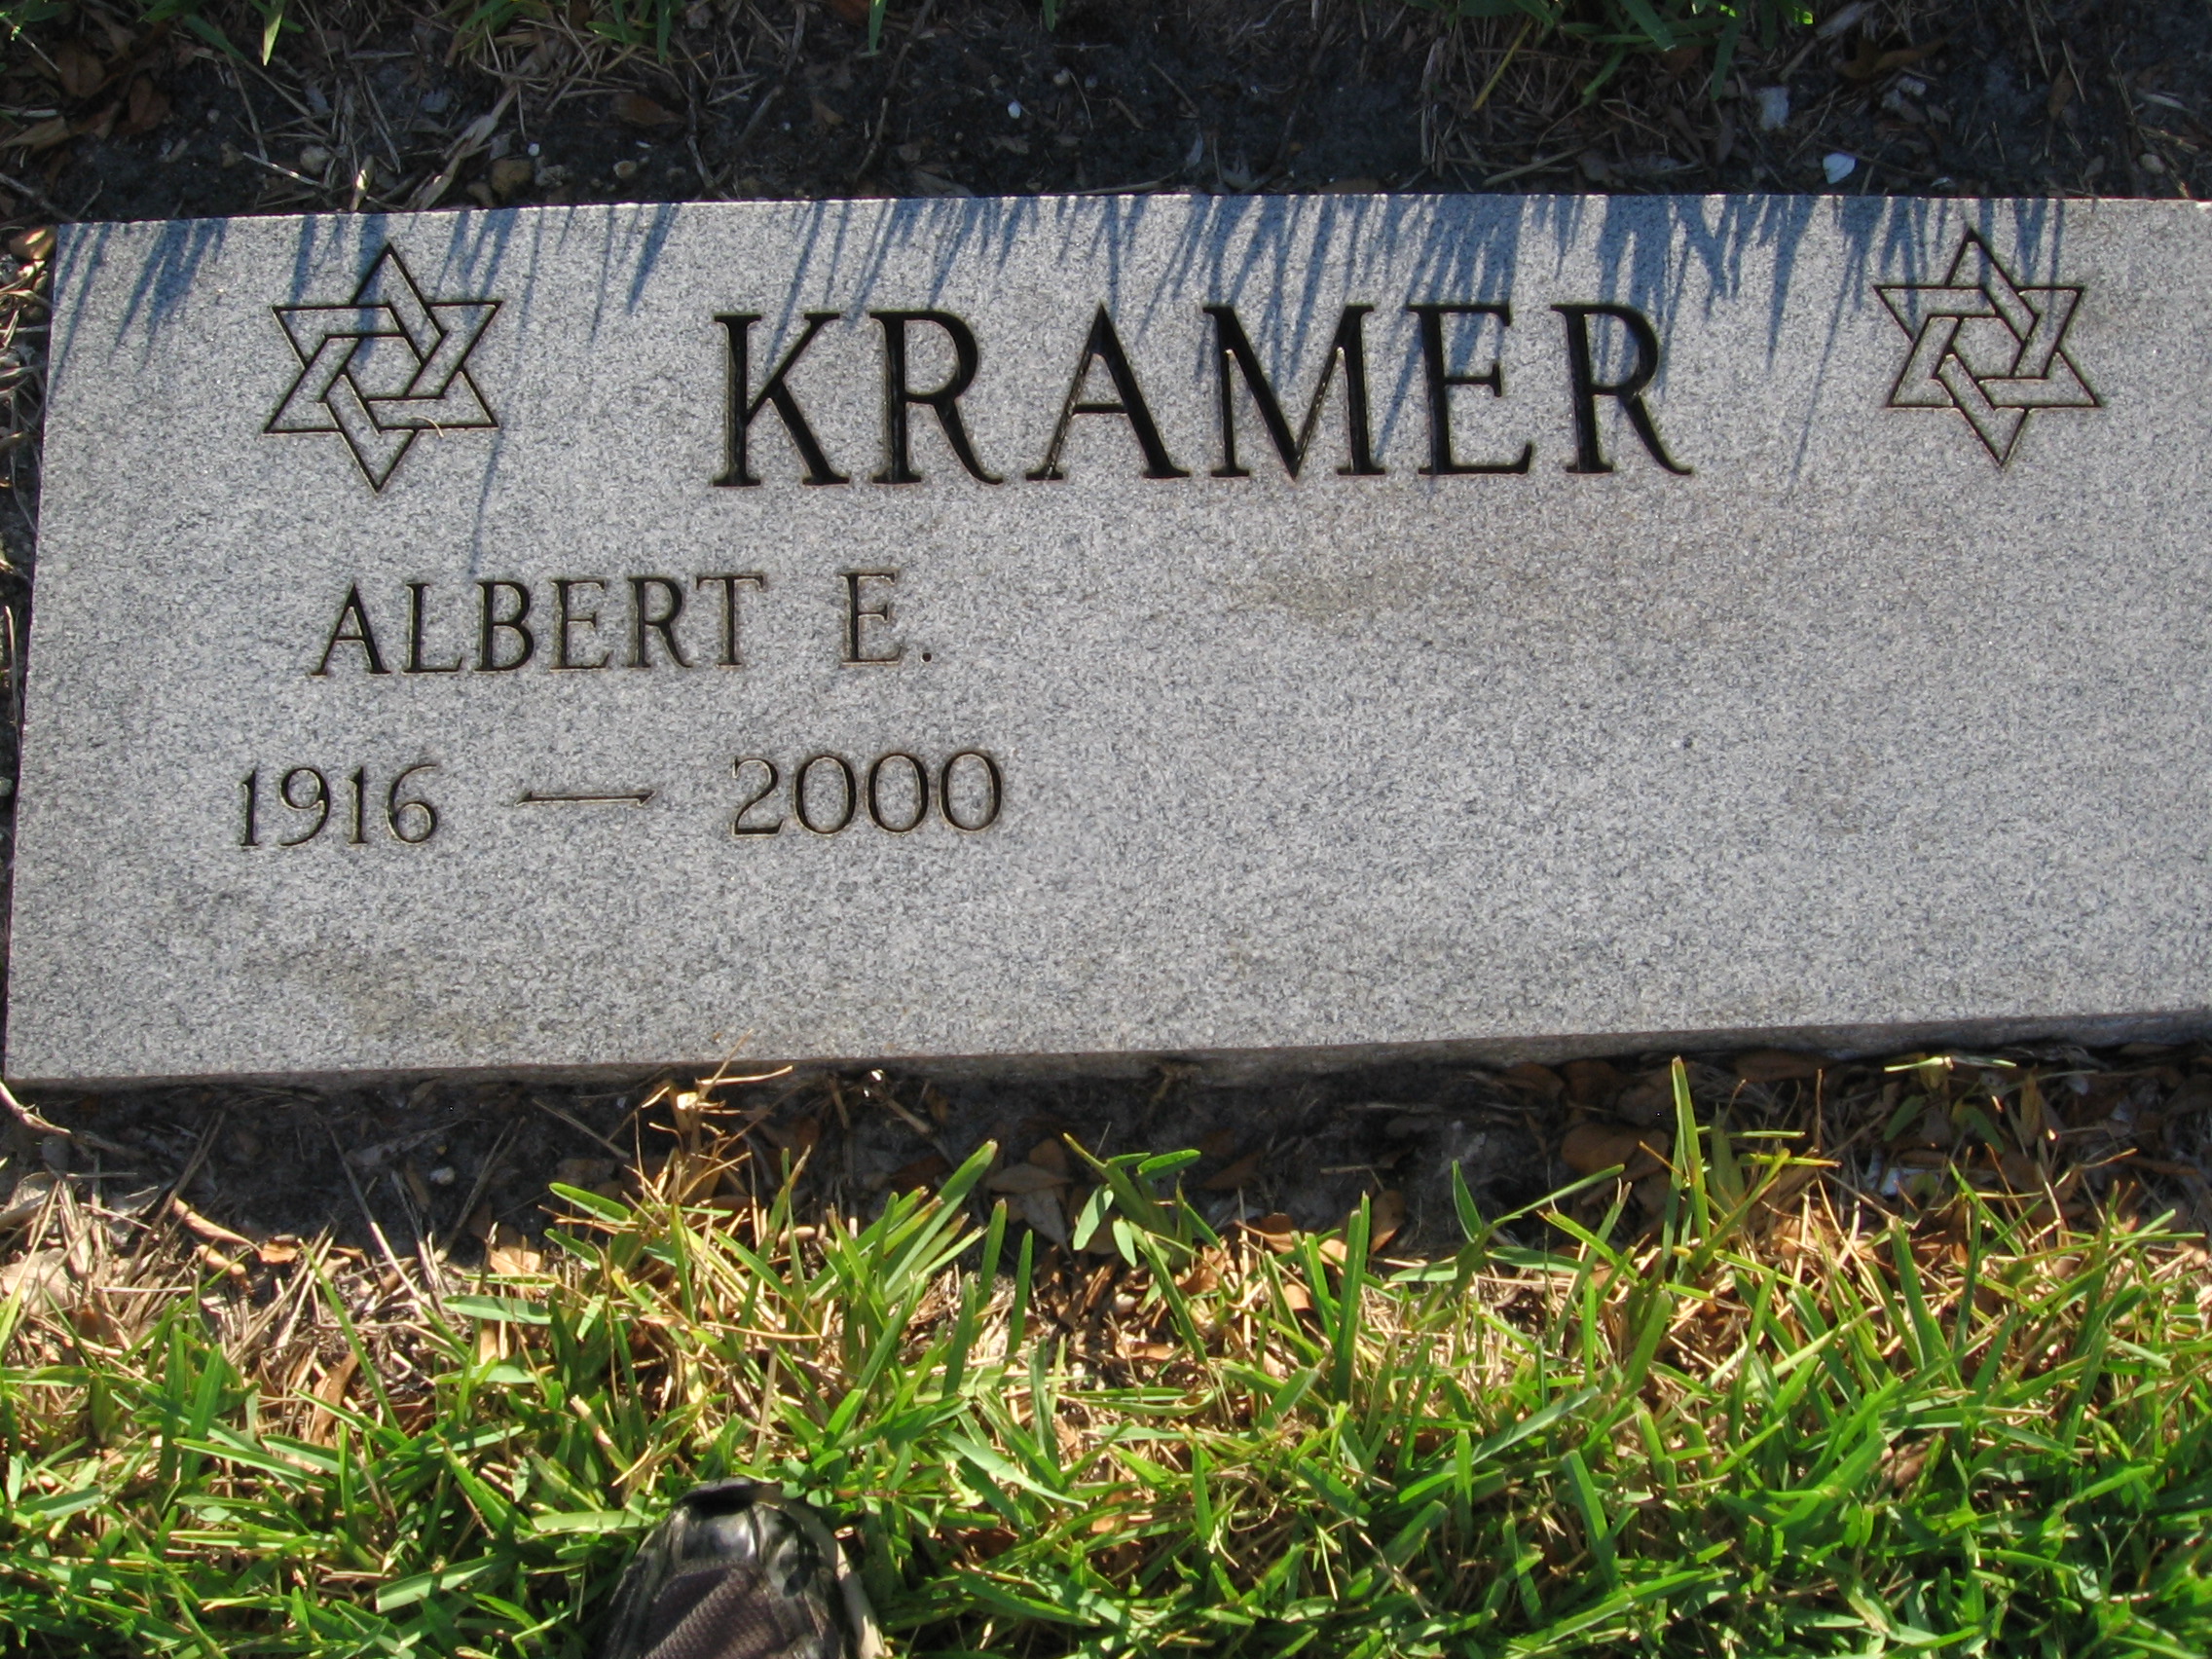 Albert E Kramer